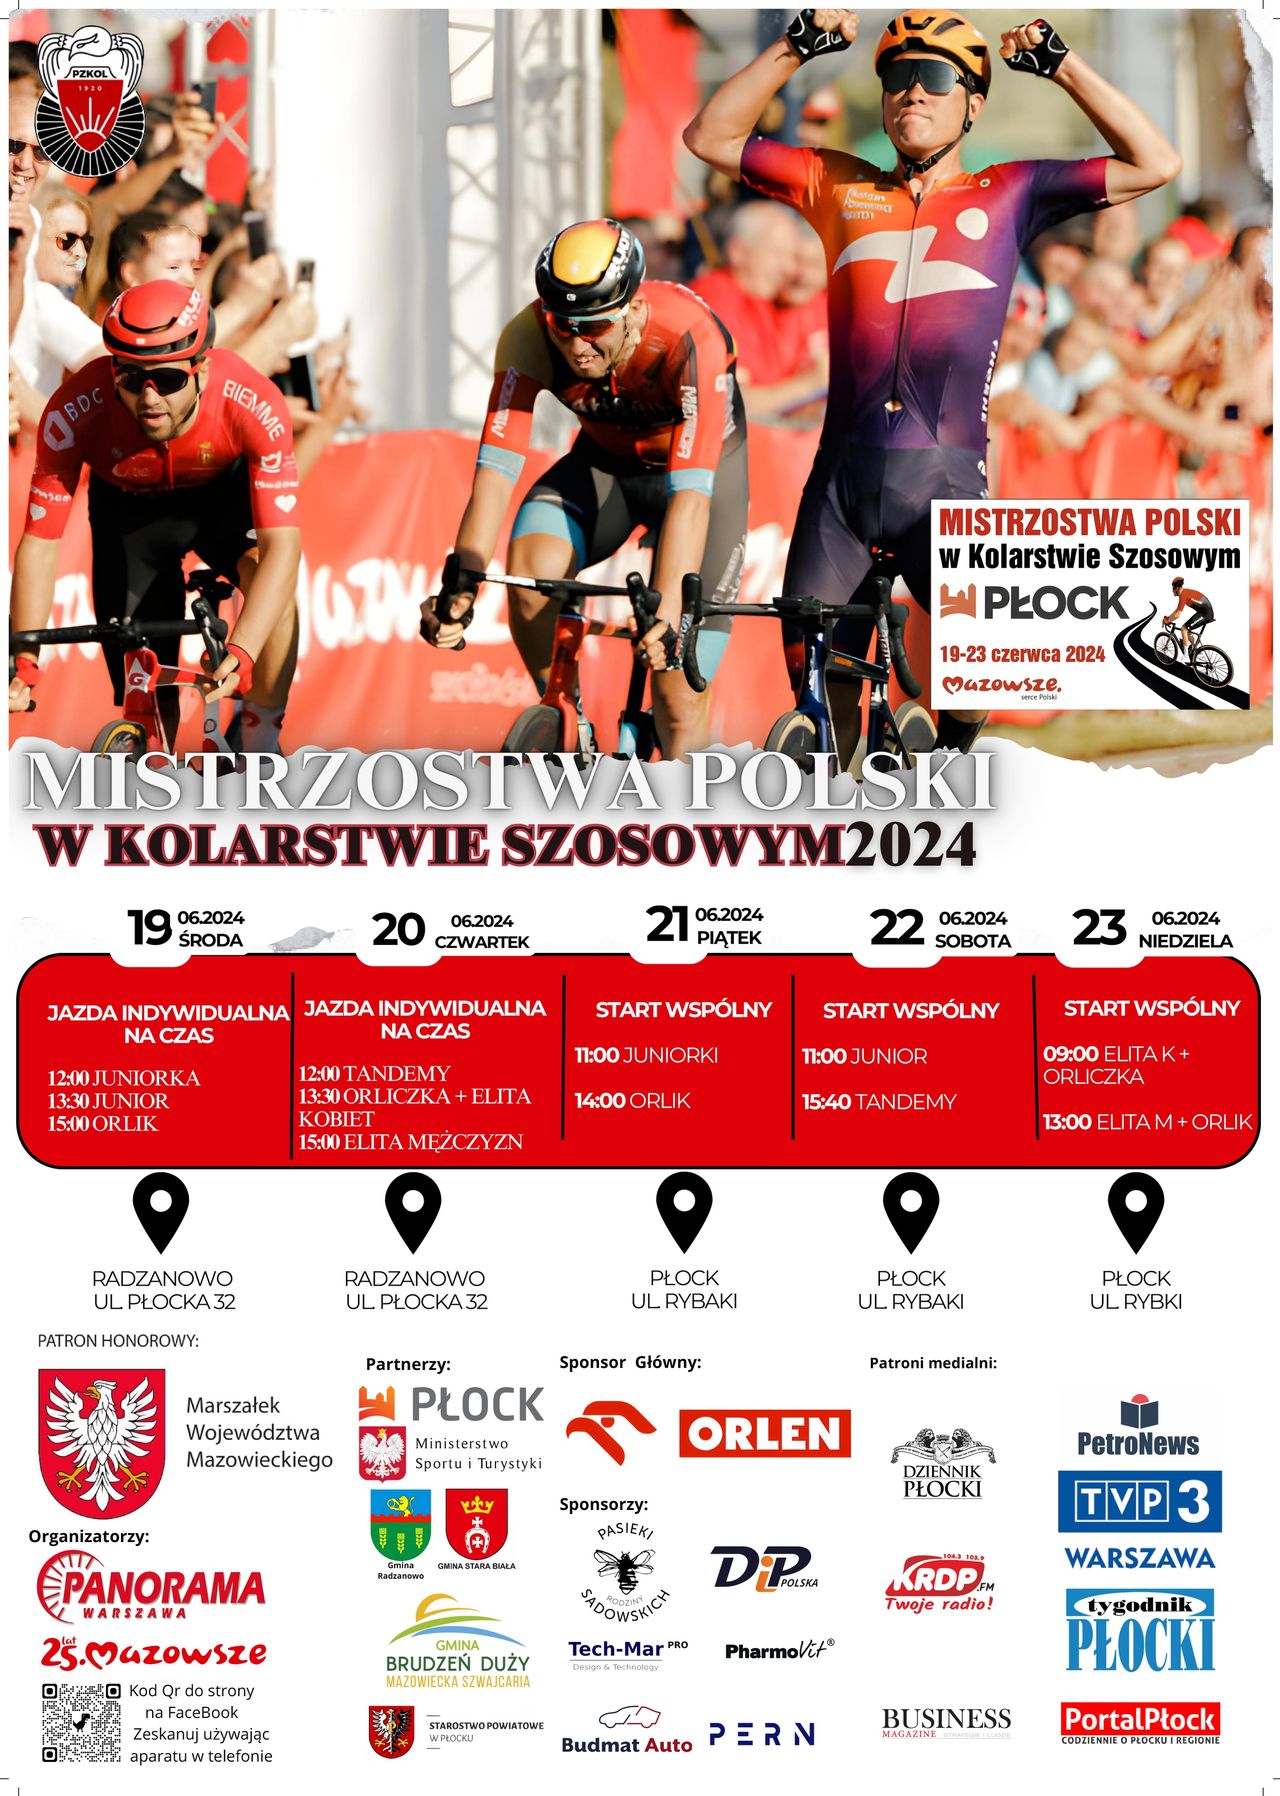 Mistrzostwa Polski w Kolarstwie Szosowym zaczynają się już jutro i to w naszym mieście!